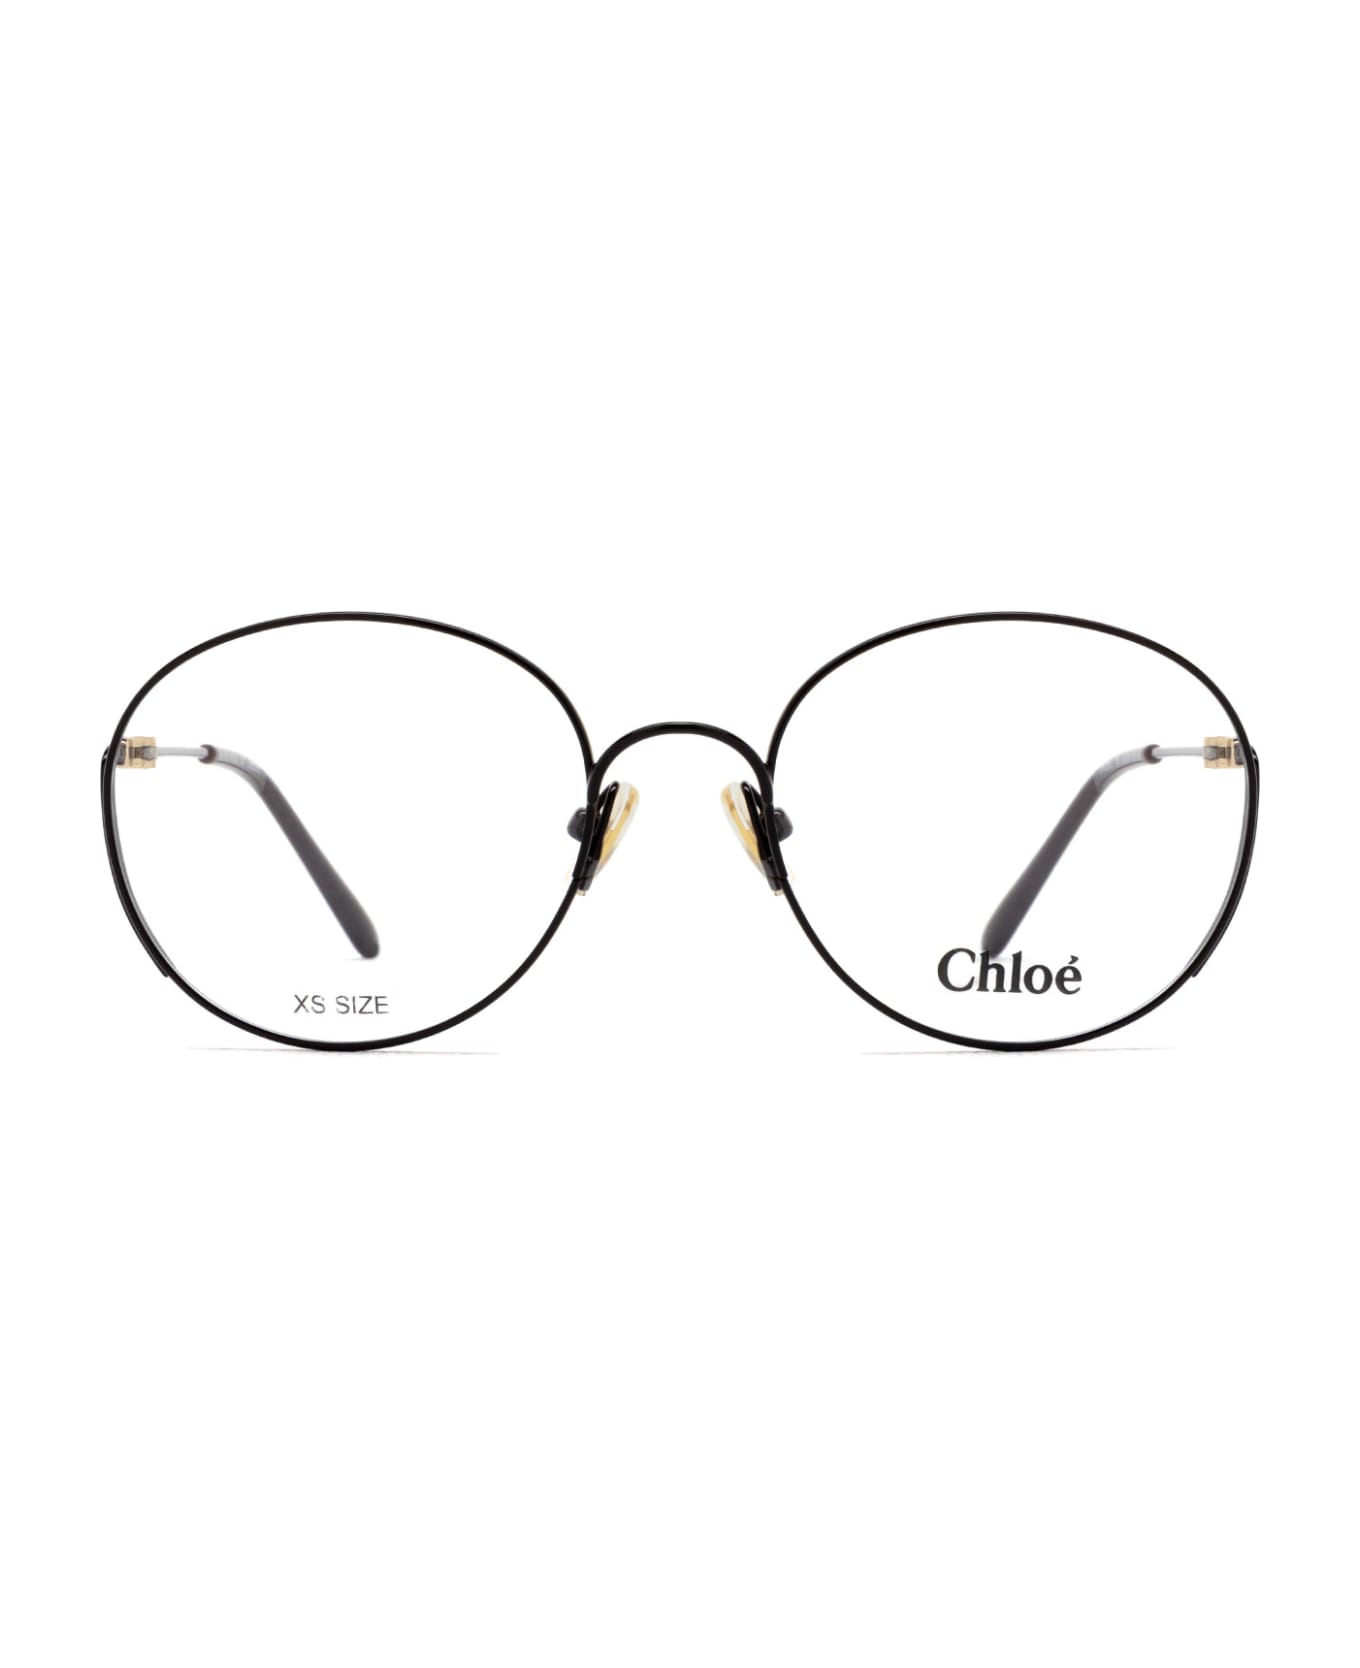 Chloé Eyewear Ch0209o Burgundy Glasses - Burgundy